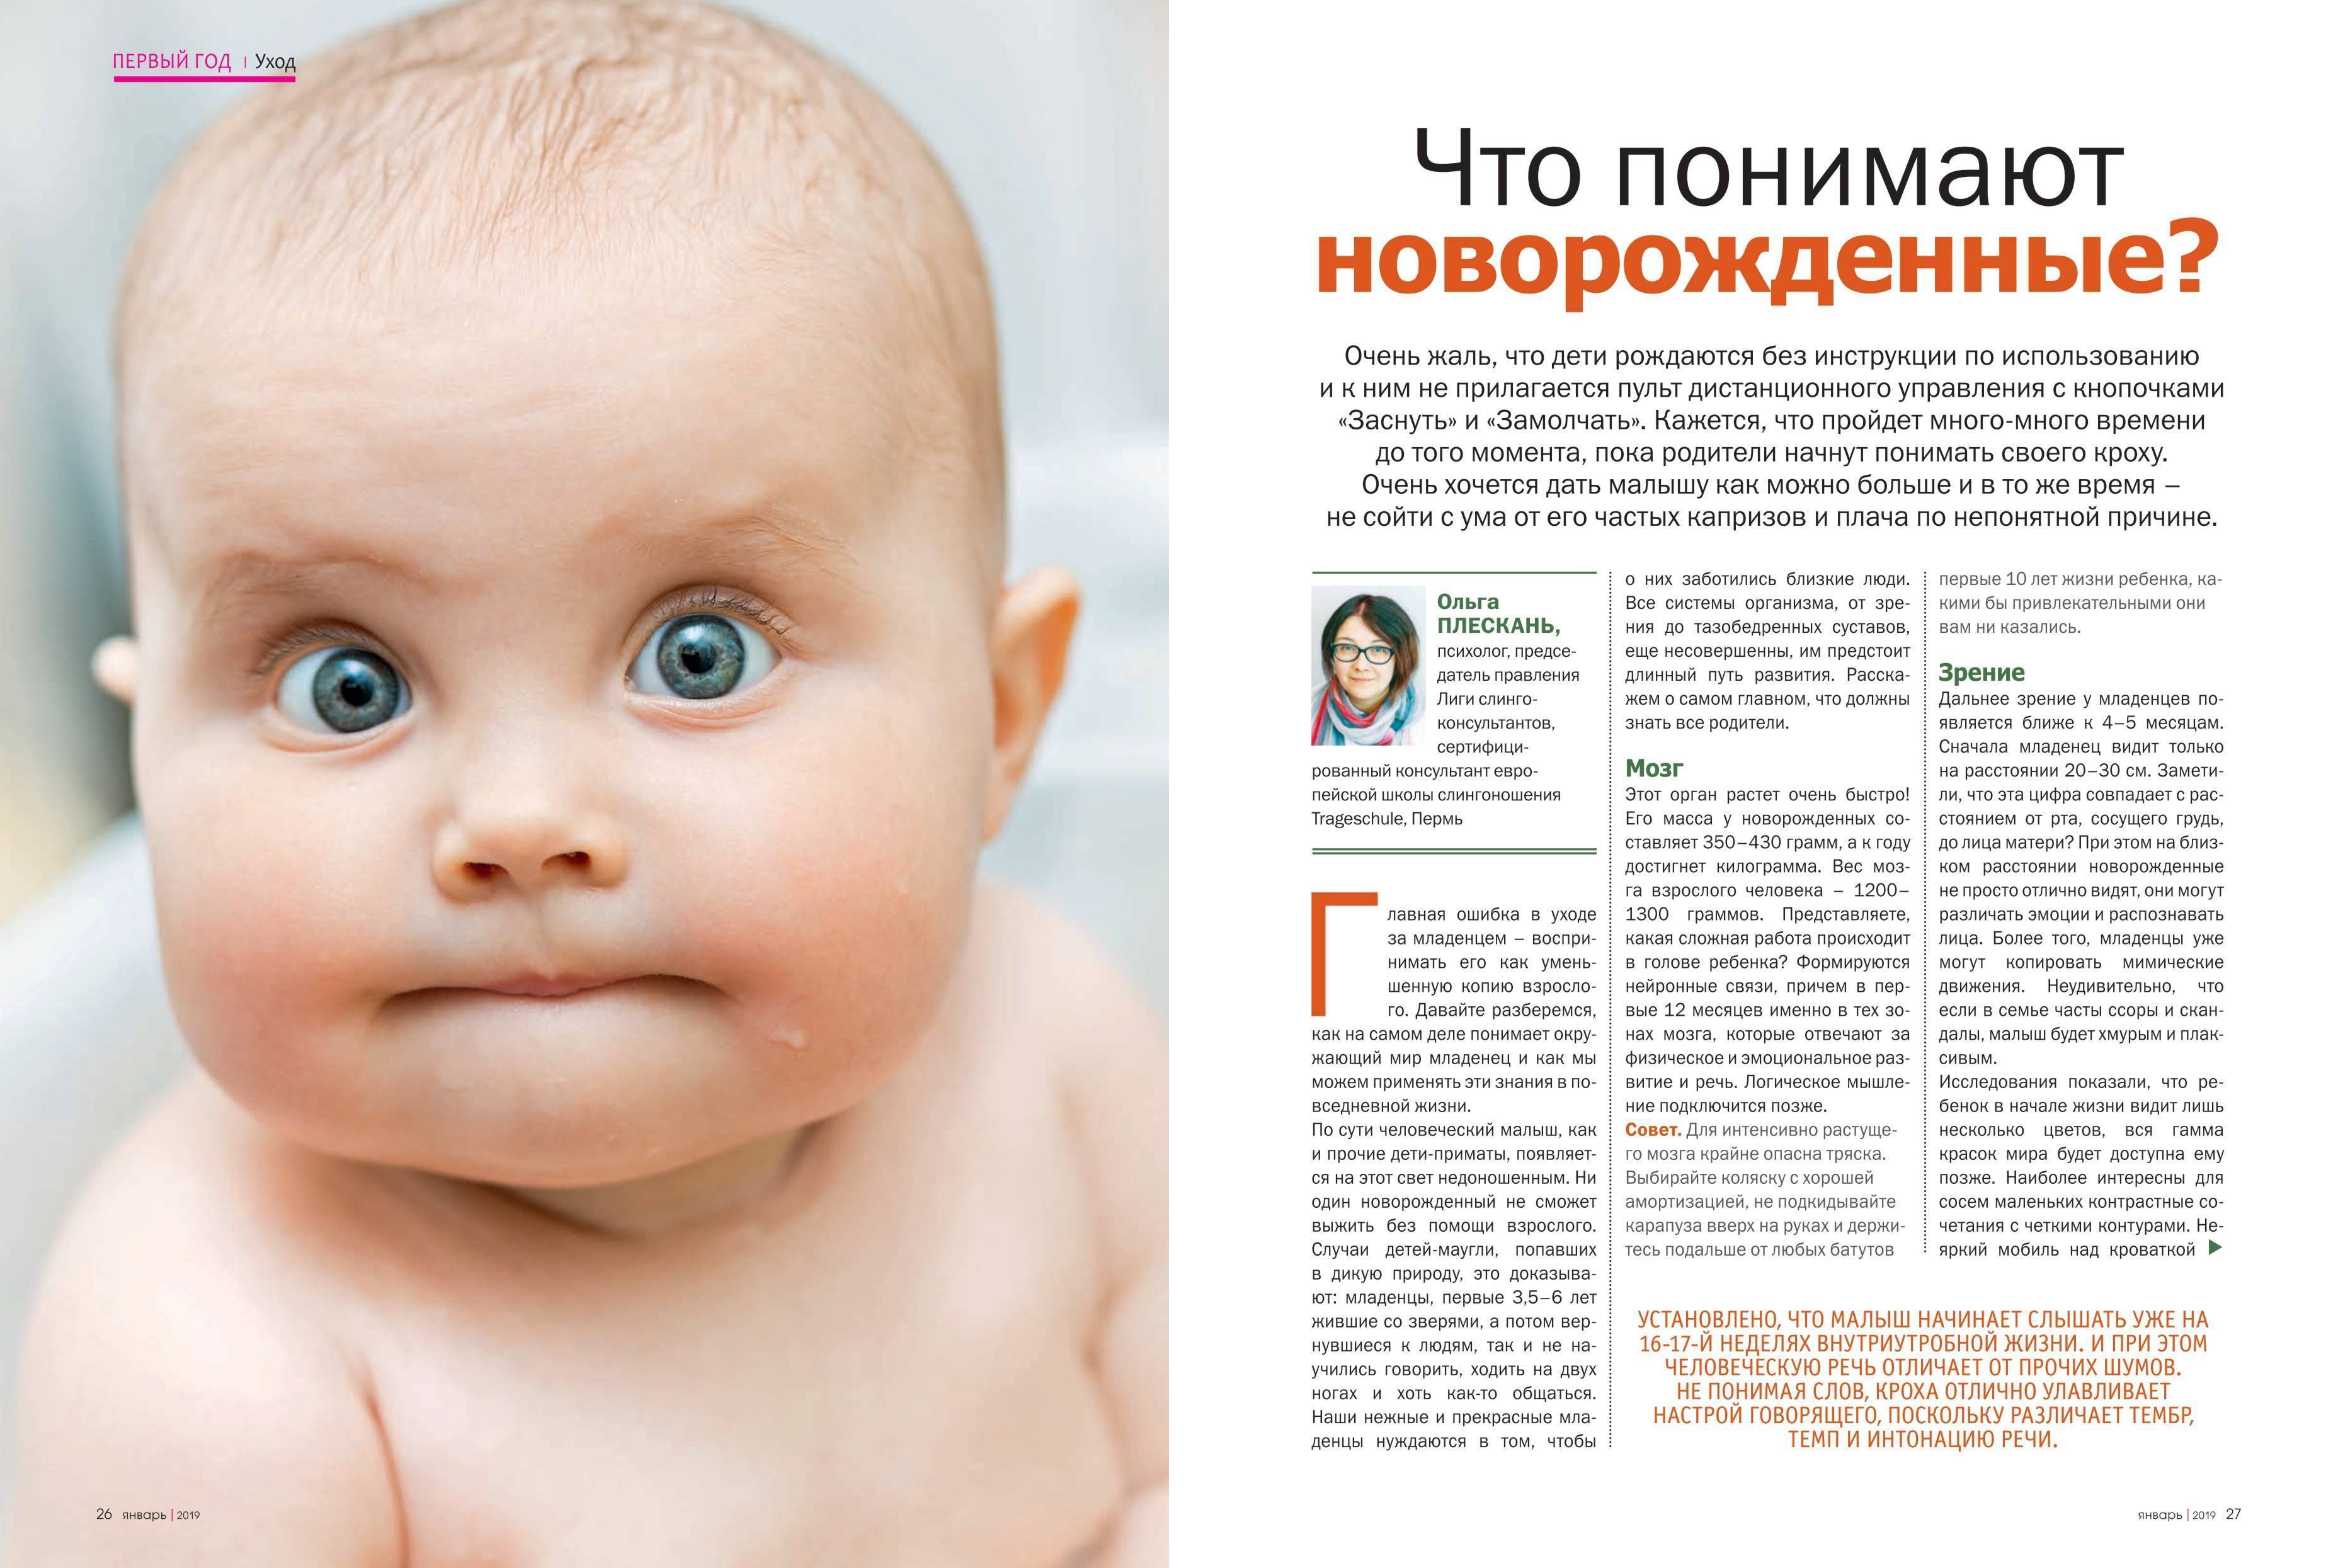 Программа увидеть ребенка. Зрение у новорожденных. Зрение новорожденного по месяцам. Как видчт новорождённый. Зрение у новорожденных по месяцам.